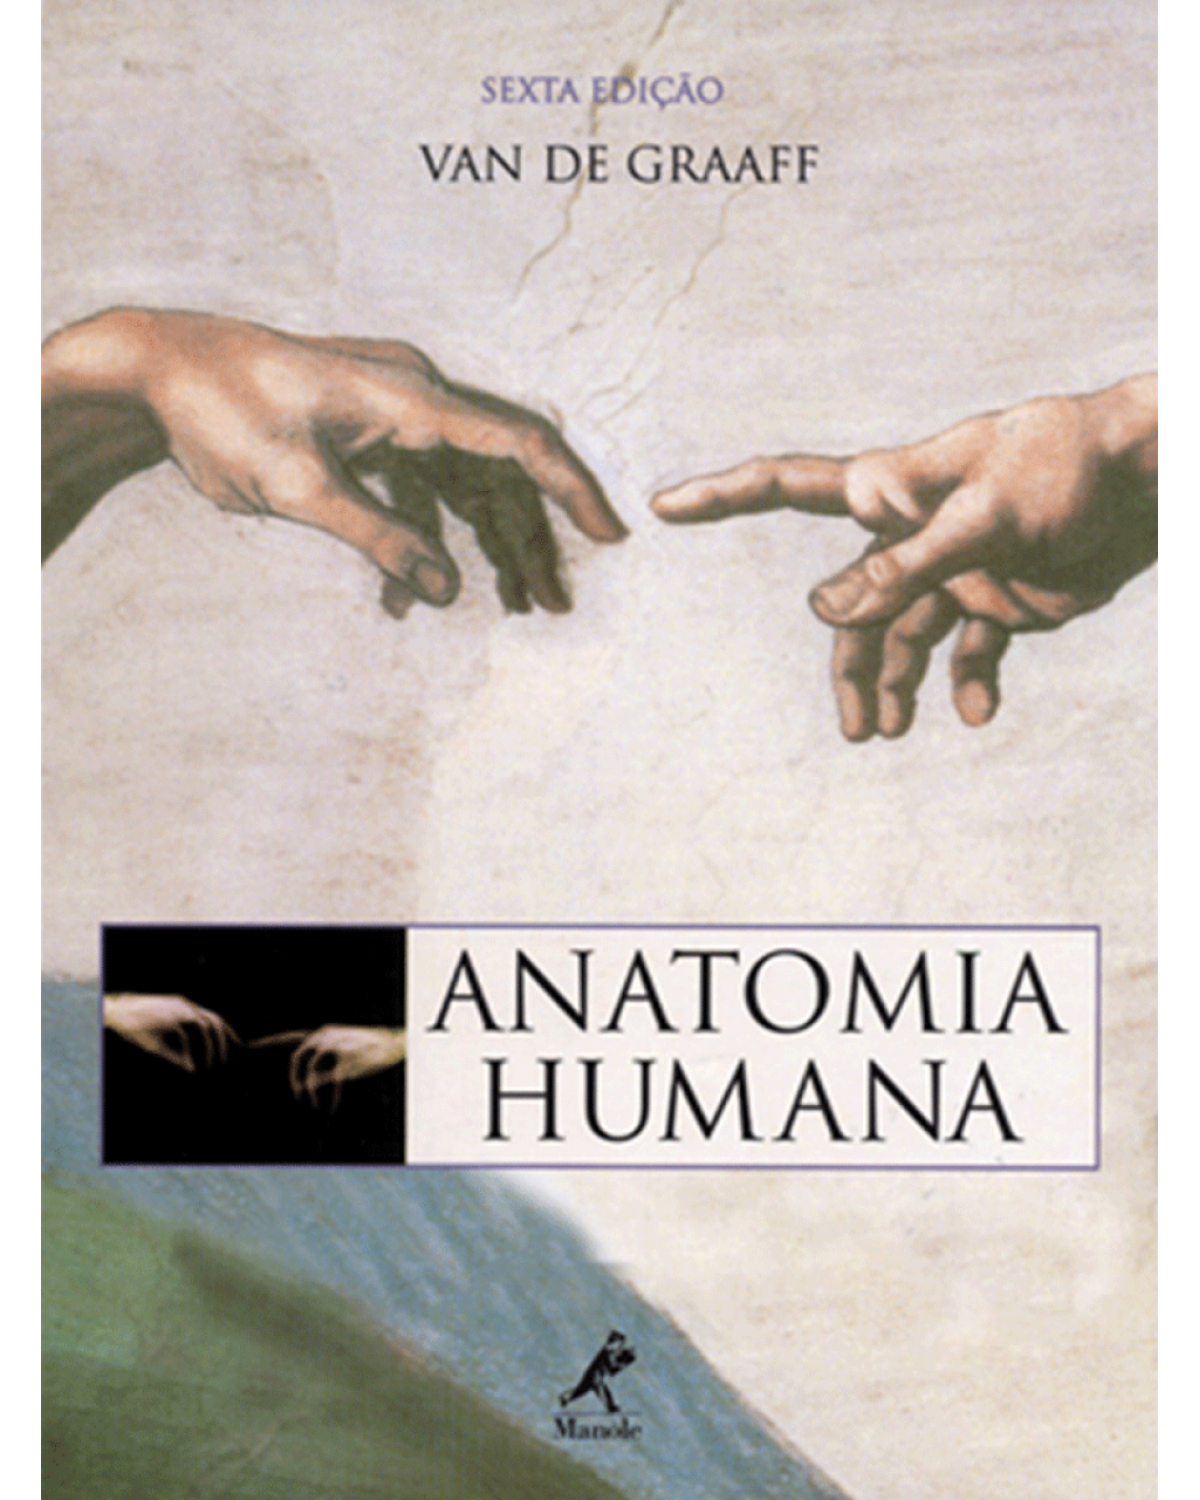 Anatomia humana - 6ª Edição | 2003